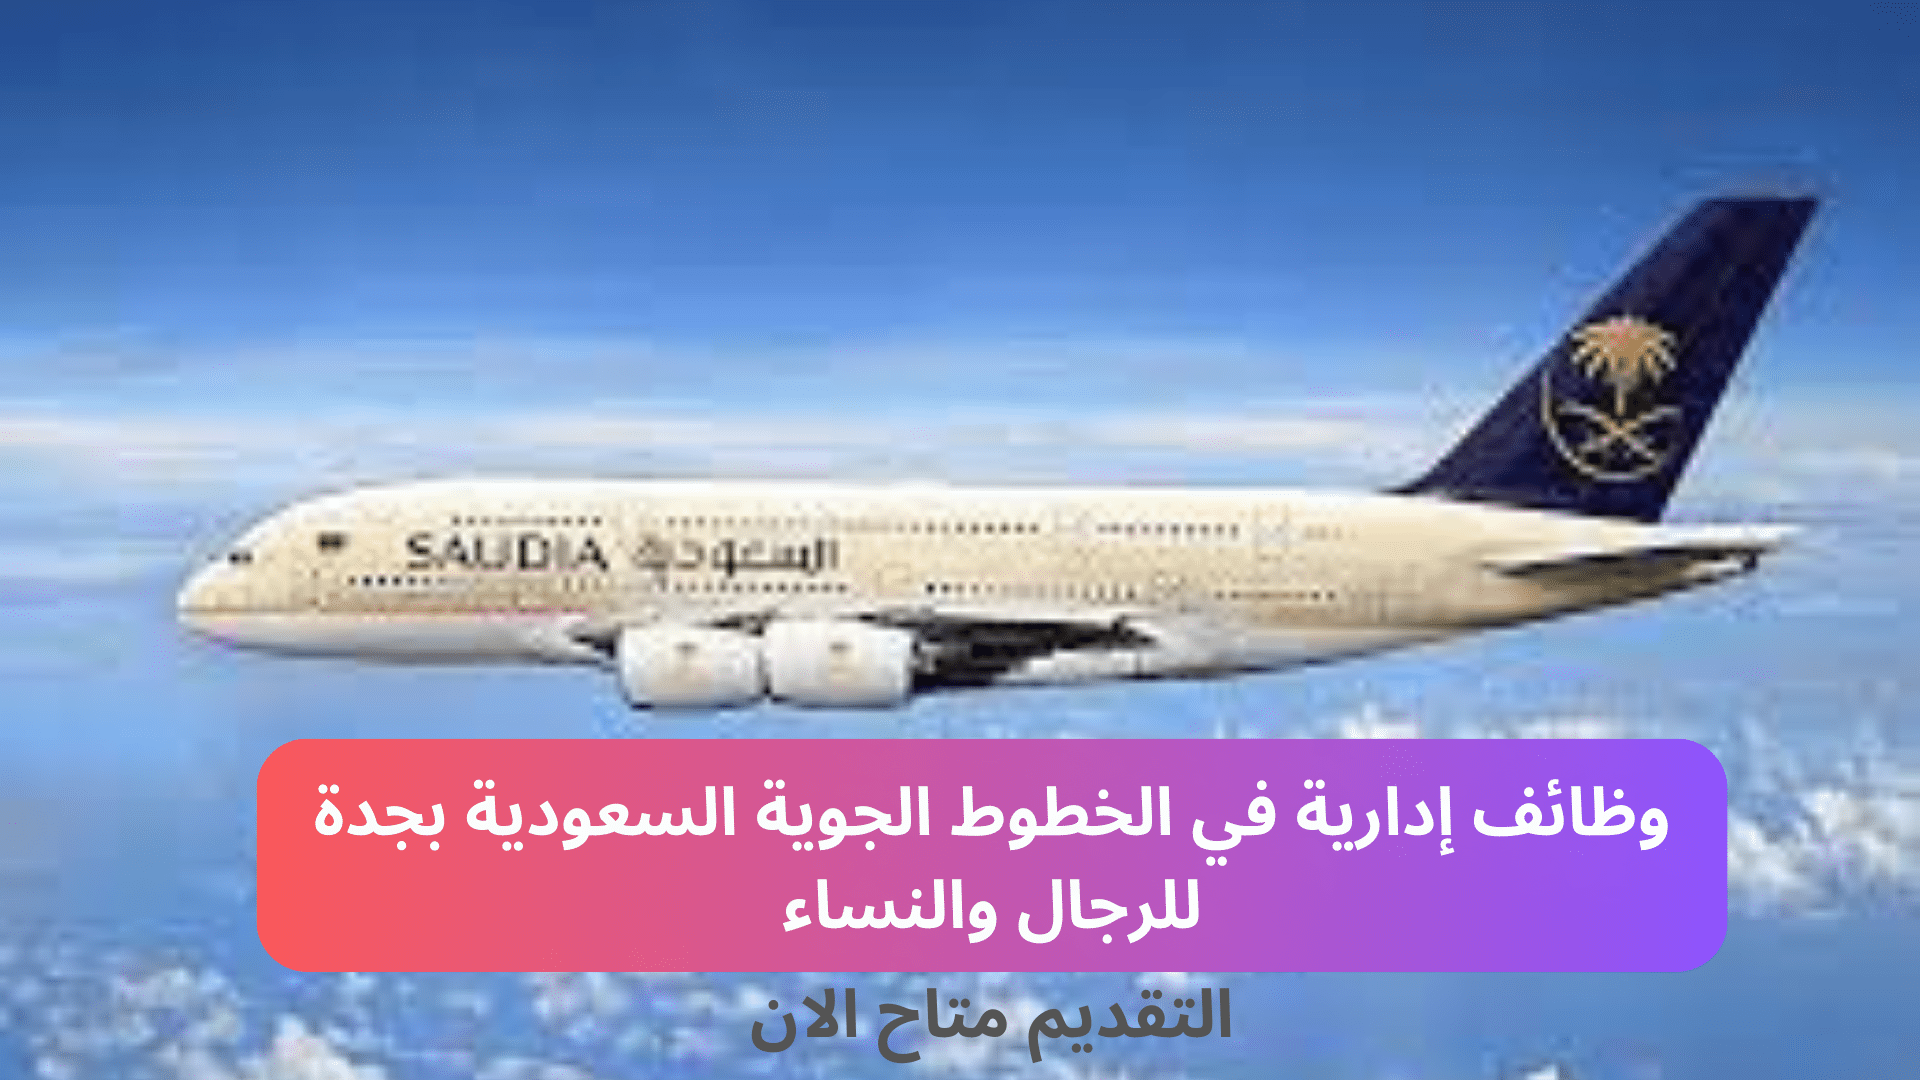 وظائف إدارية في الخطوط الجوية السعودية بجدة للرجال والنساء